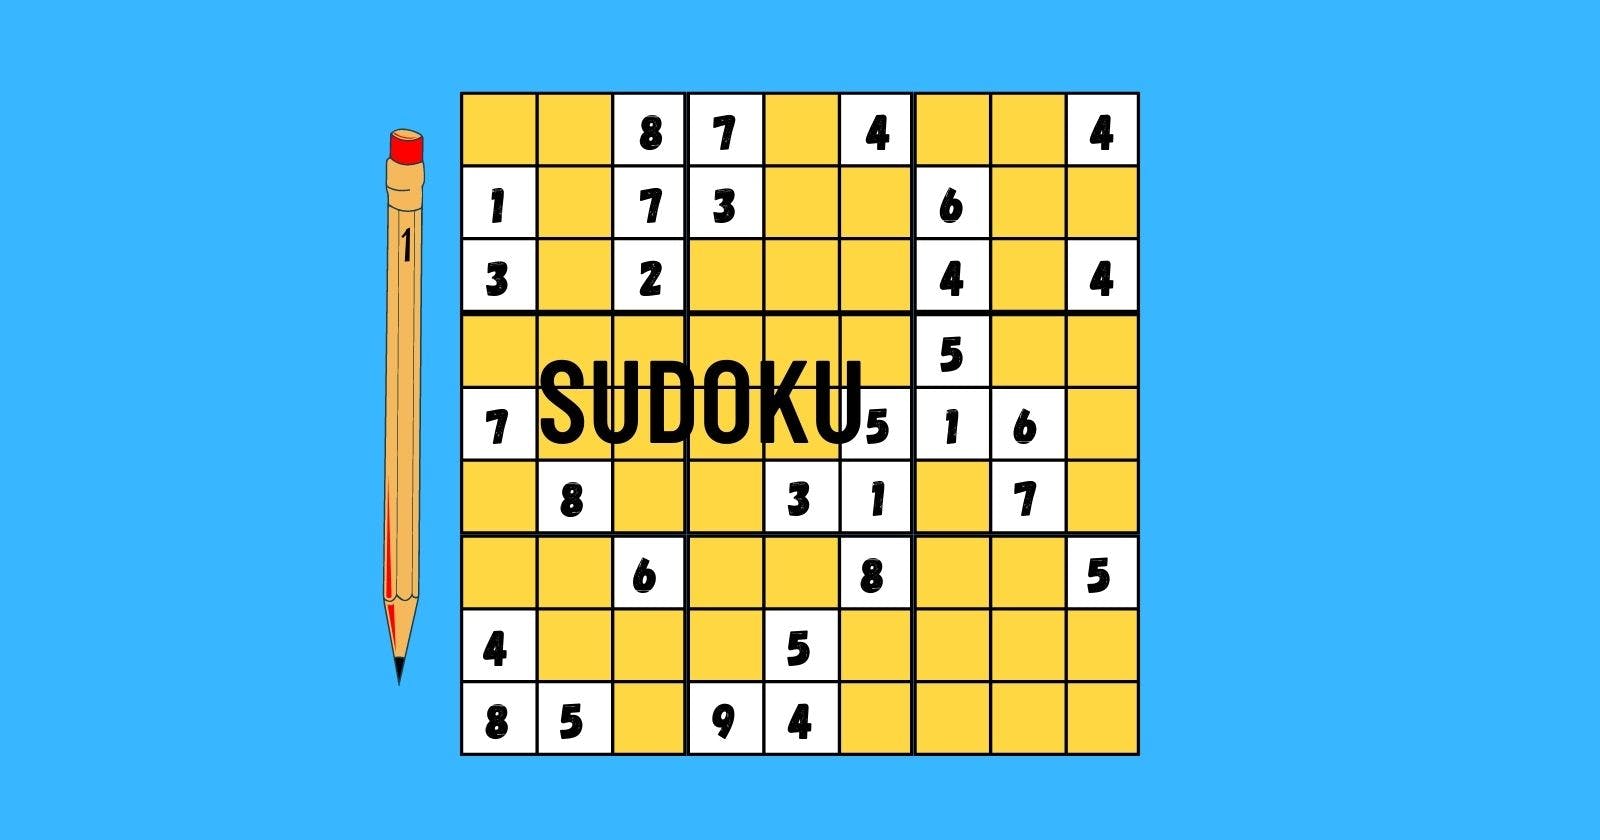 Creating a Sudoku Solver Using Python